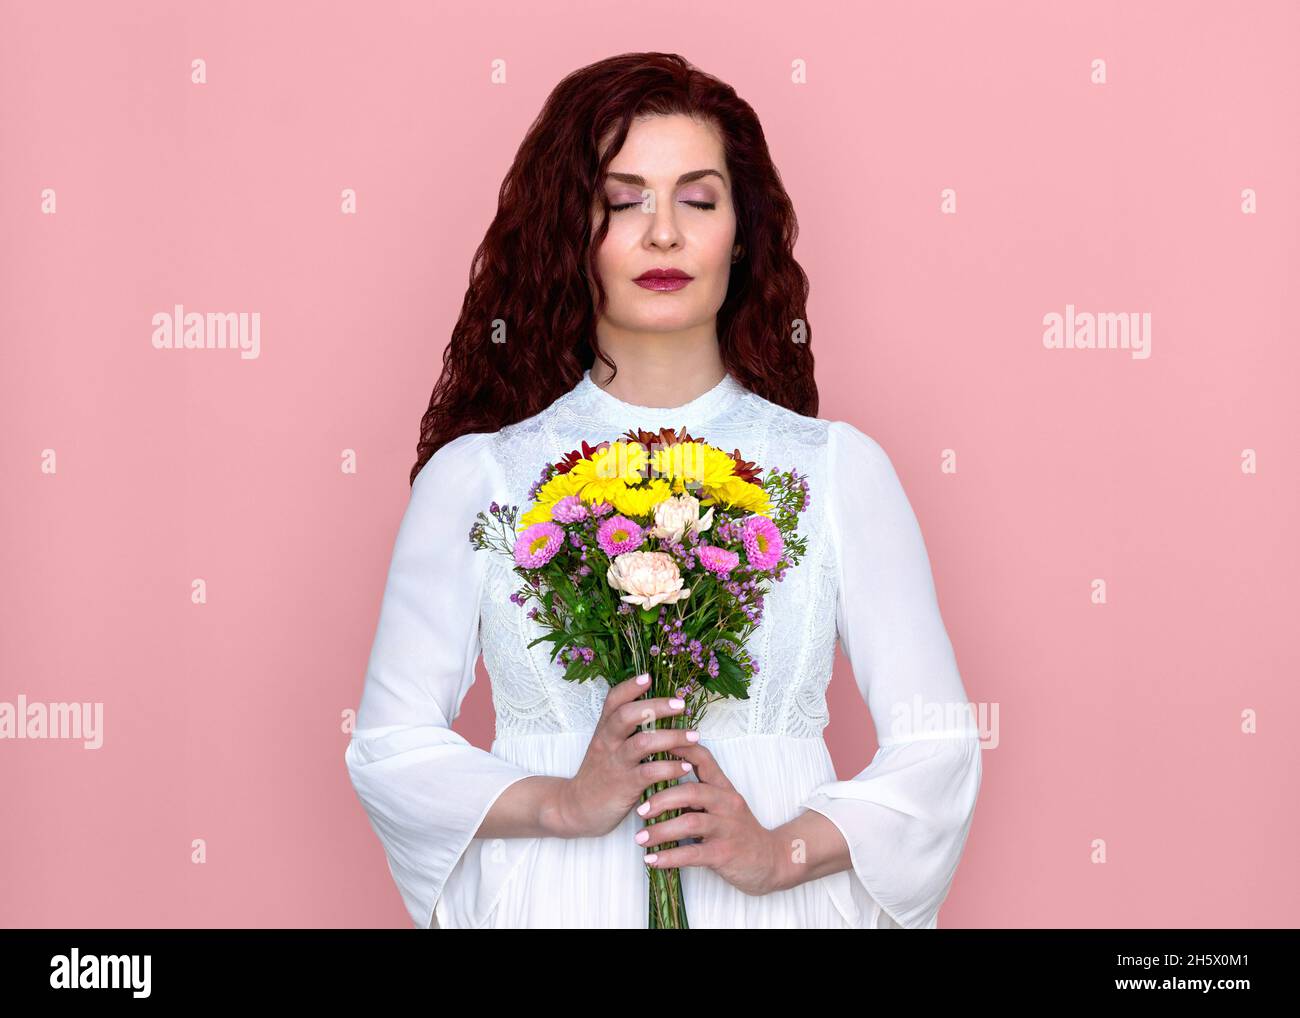 Donna con occhi chiusi tiene e odora il bouquet di fiori con sfondo rosa. Ritratto di bella donna in romantico abito bianco con fiori. Foto Stock